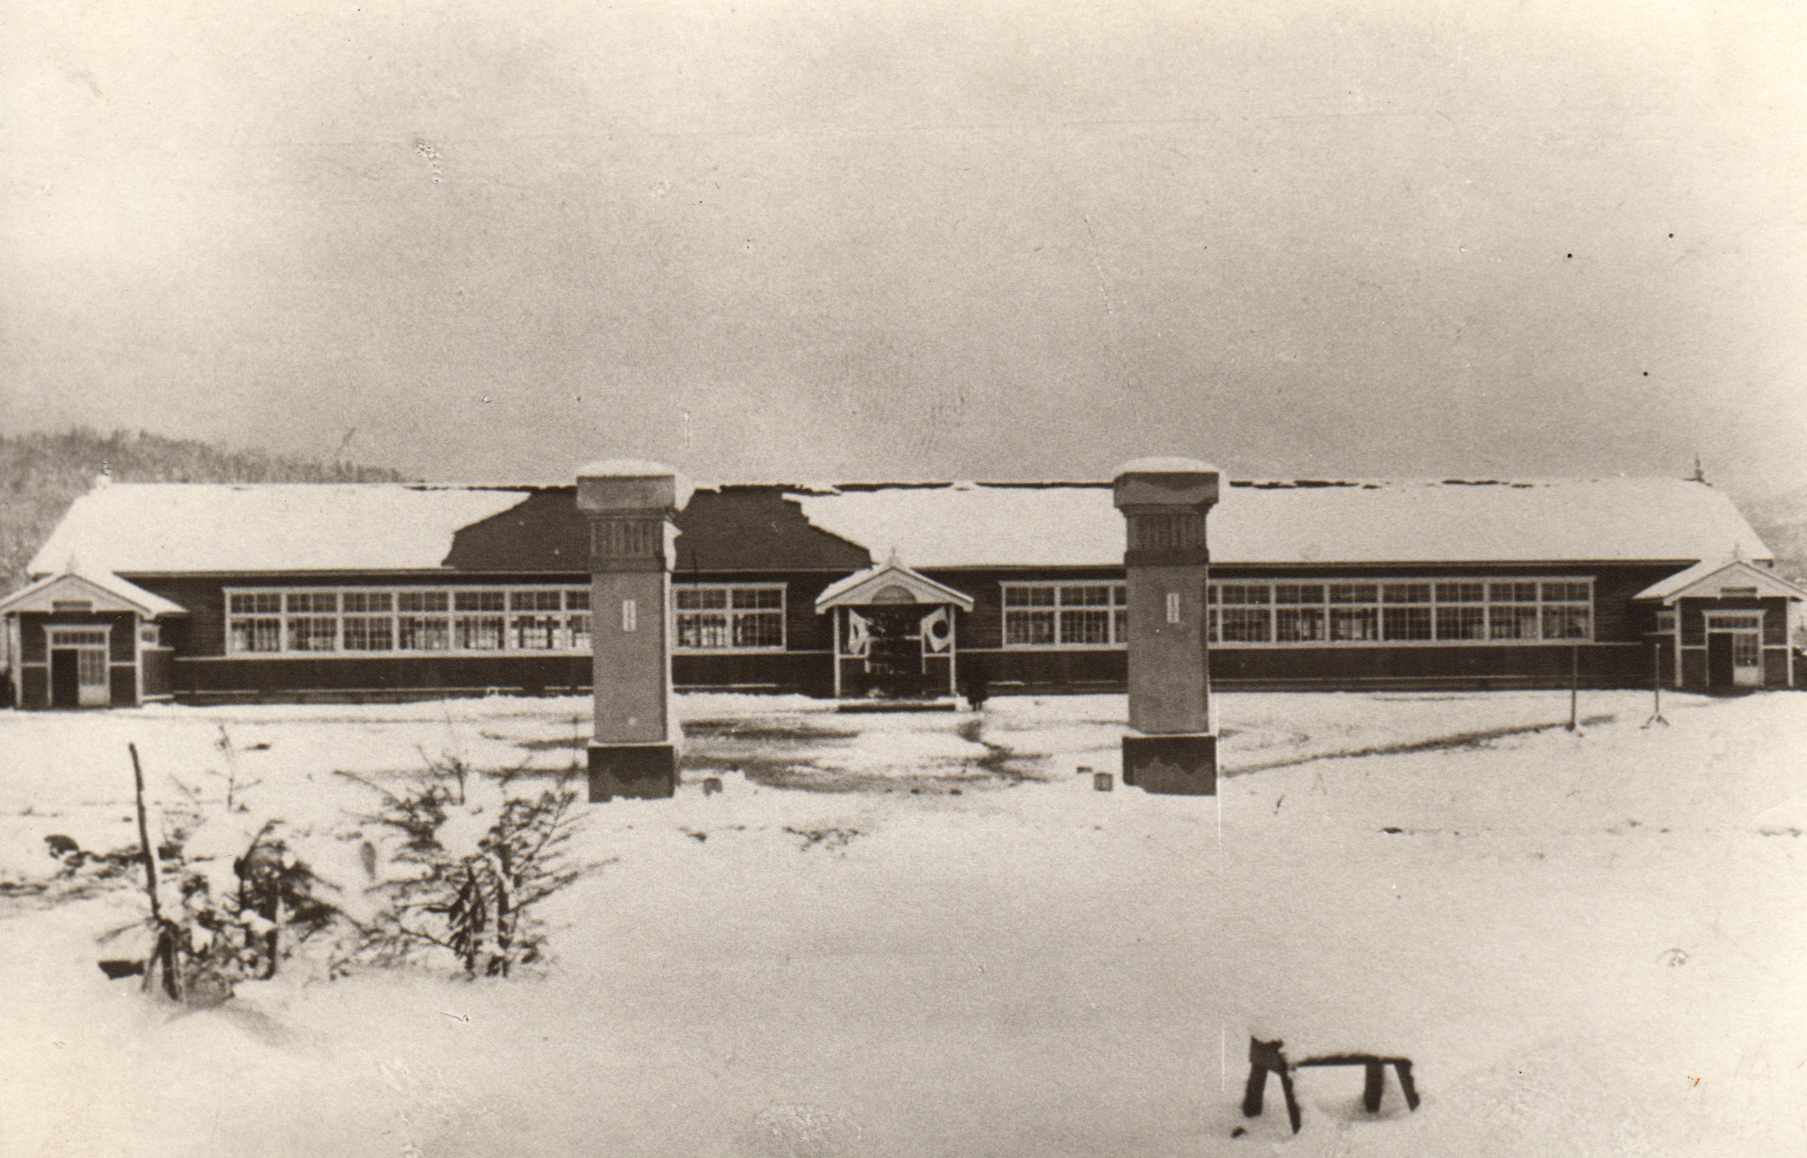 中央に大きな2つの門柱が立ち、奥の入り口に日の丸旗が飾られている雪が積もった昭和3年時の横長の糸魚小学校校舎の白黒写真